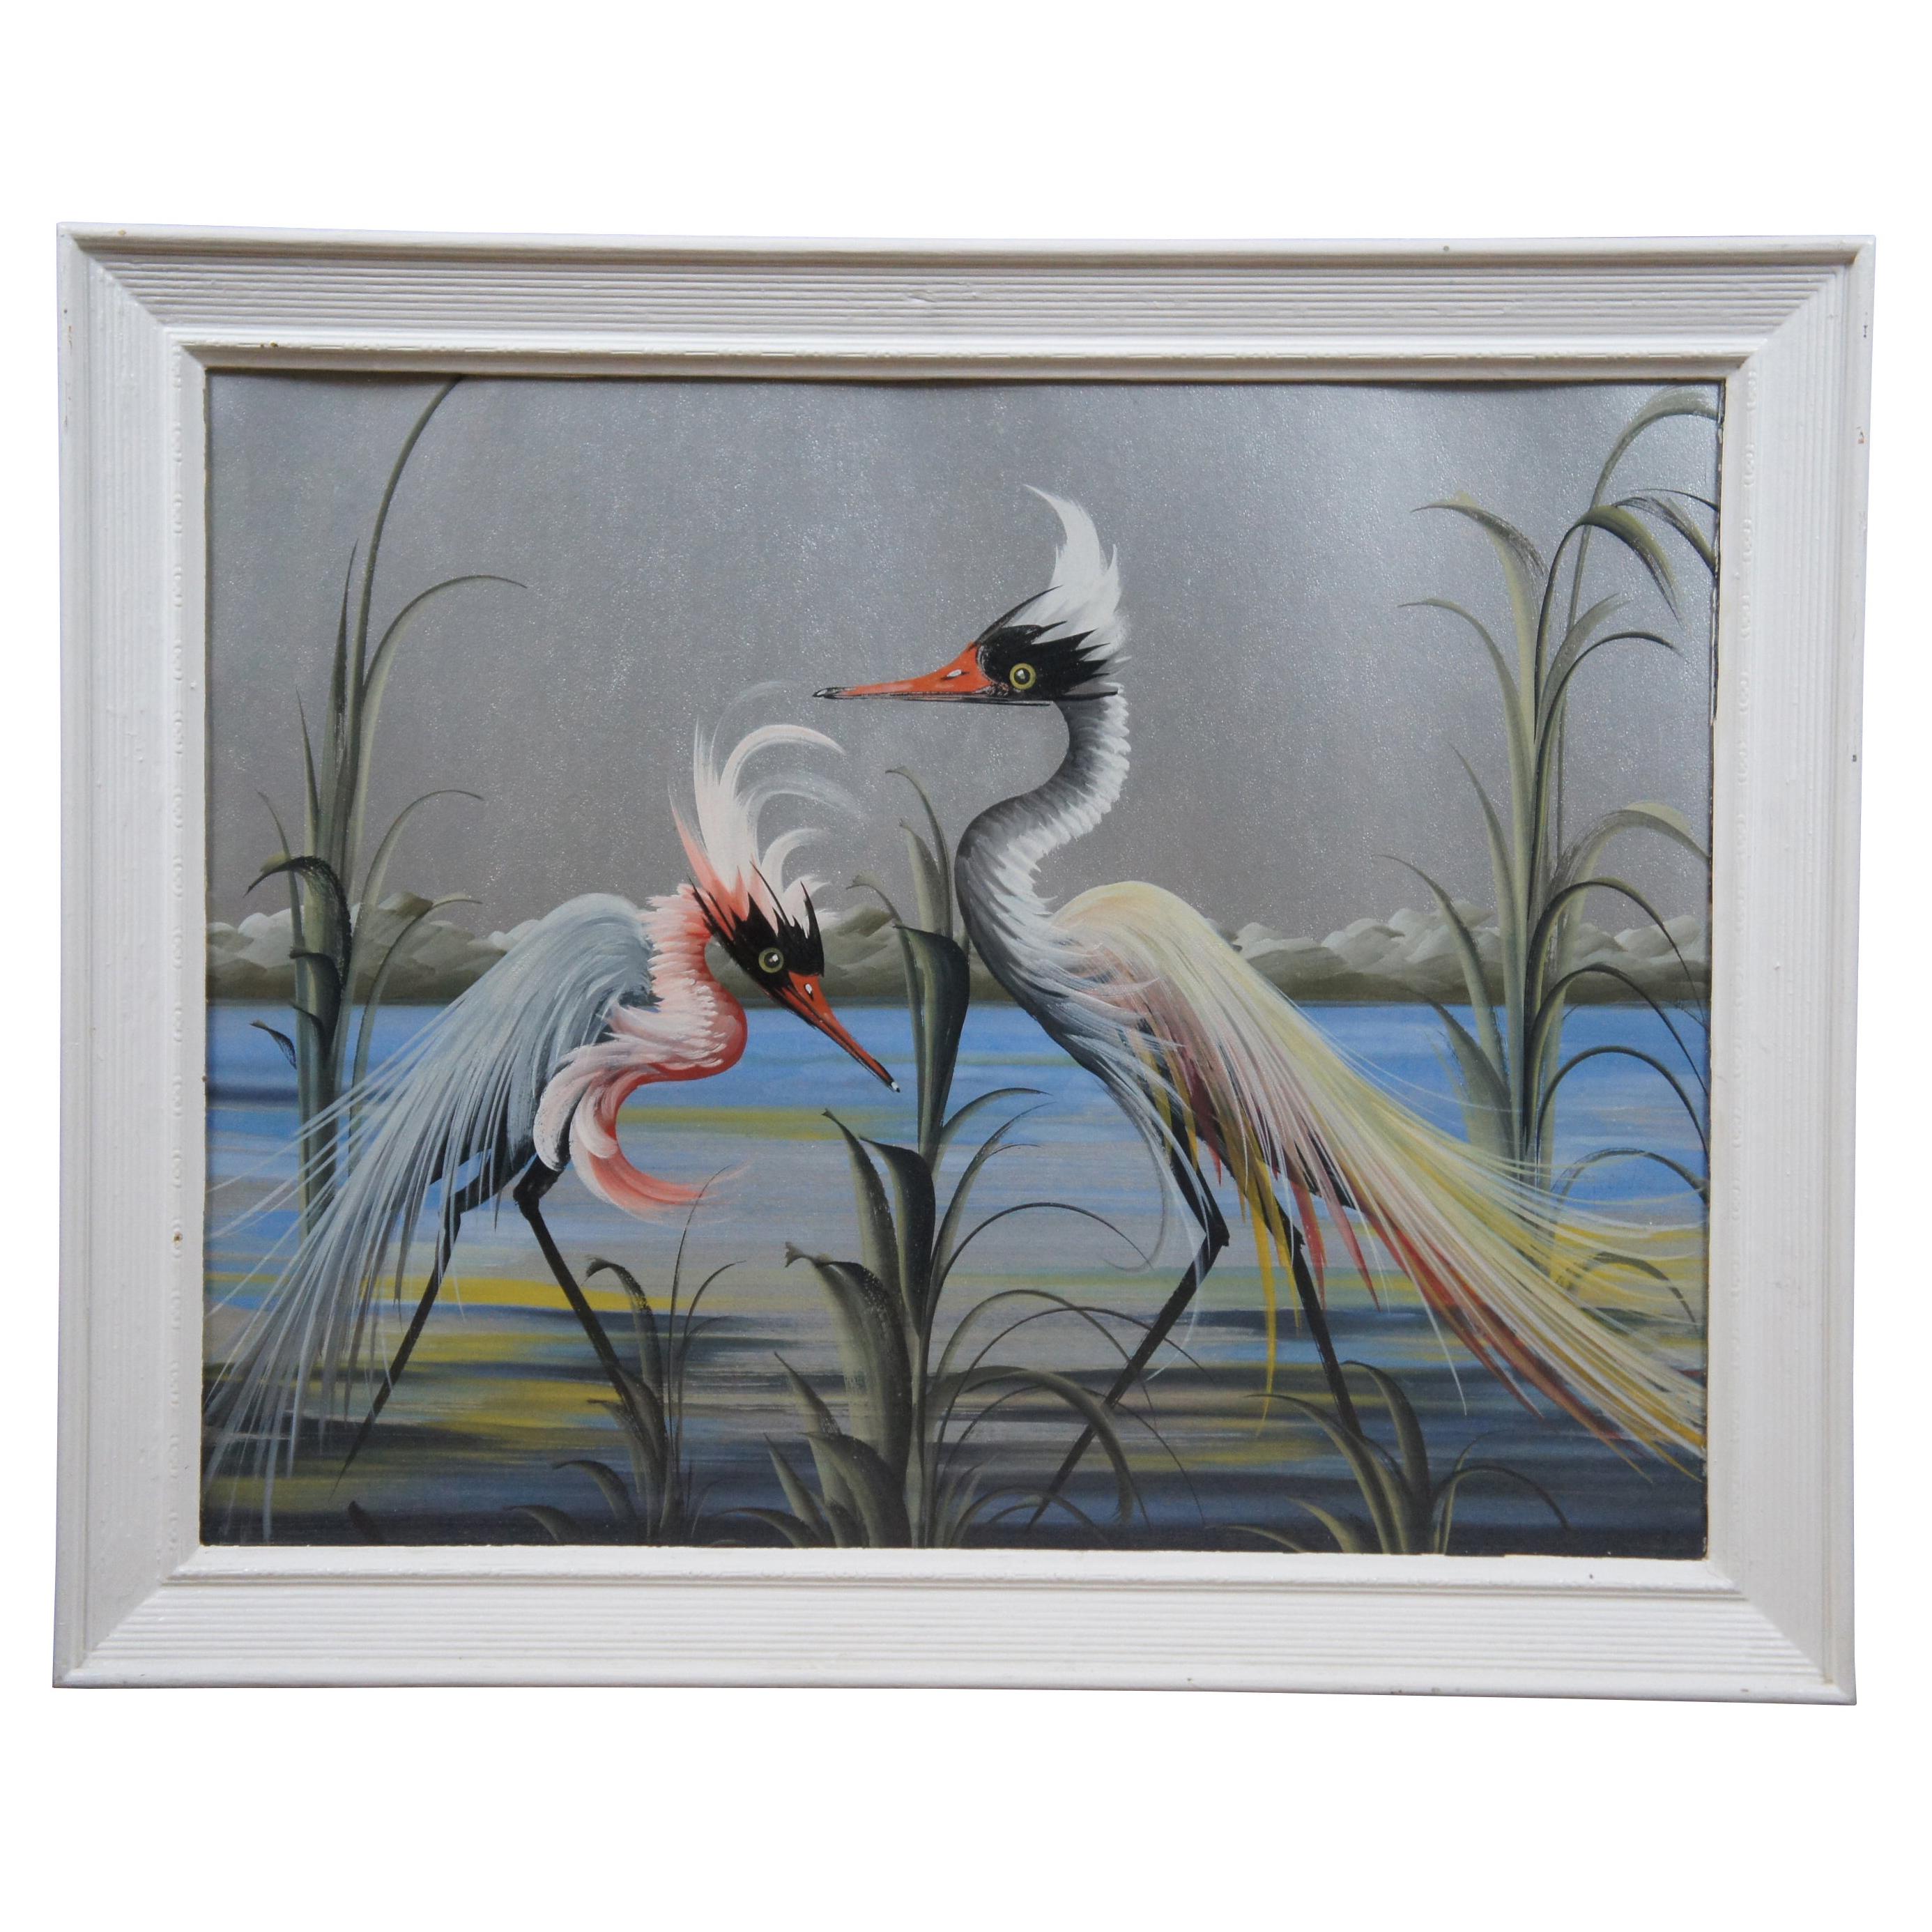 Landscape Painting Portrait of Herons Cranes on Silver Paper Seascape Birds